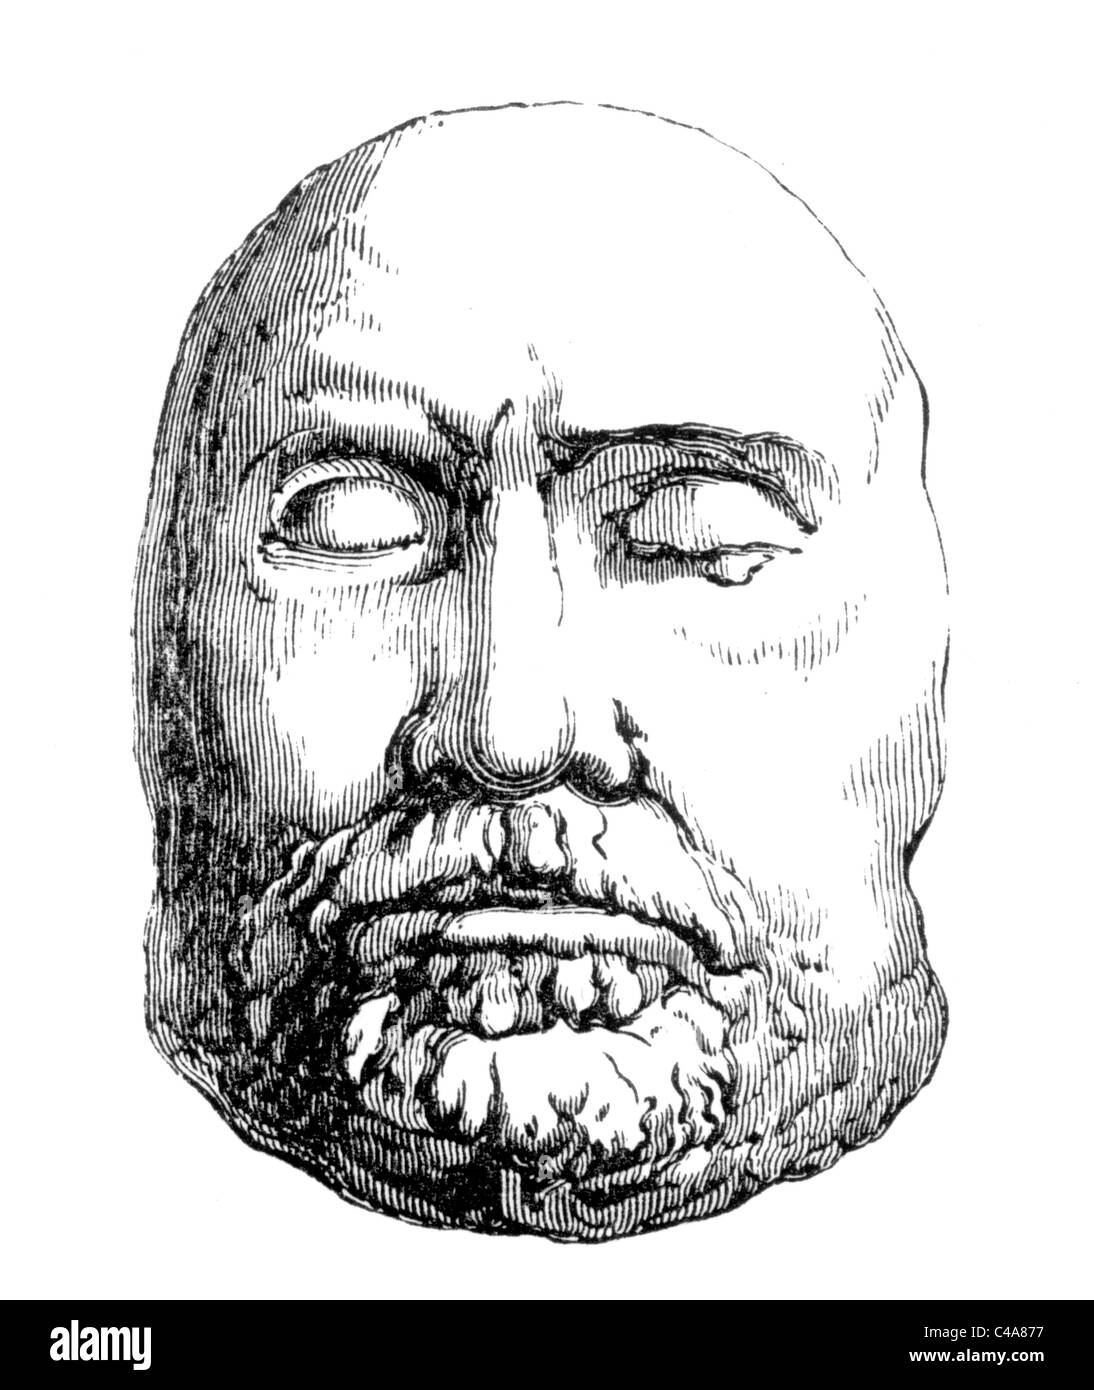 La máscara mortuoria de Oliver Cromwell 1658; ilustración en blanco y negro. Foto de stock